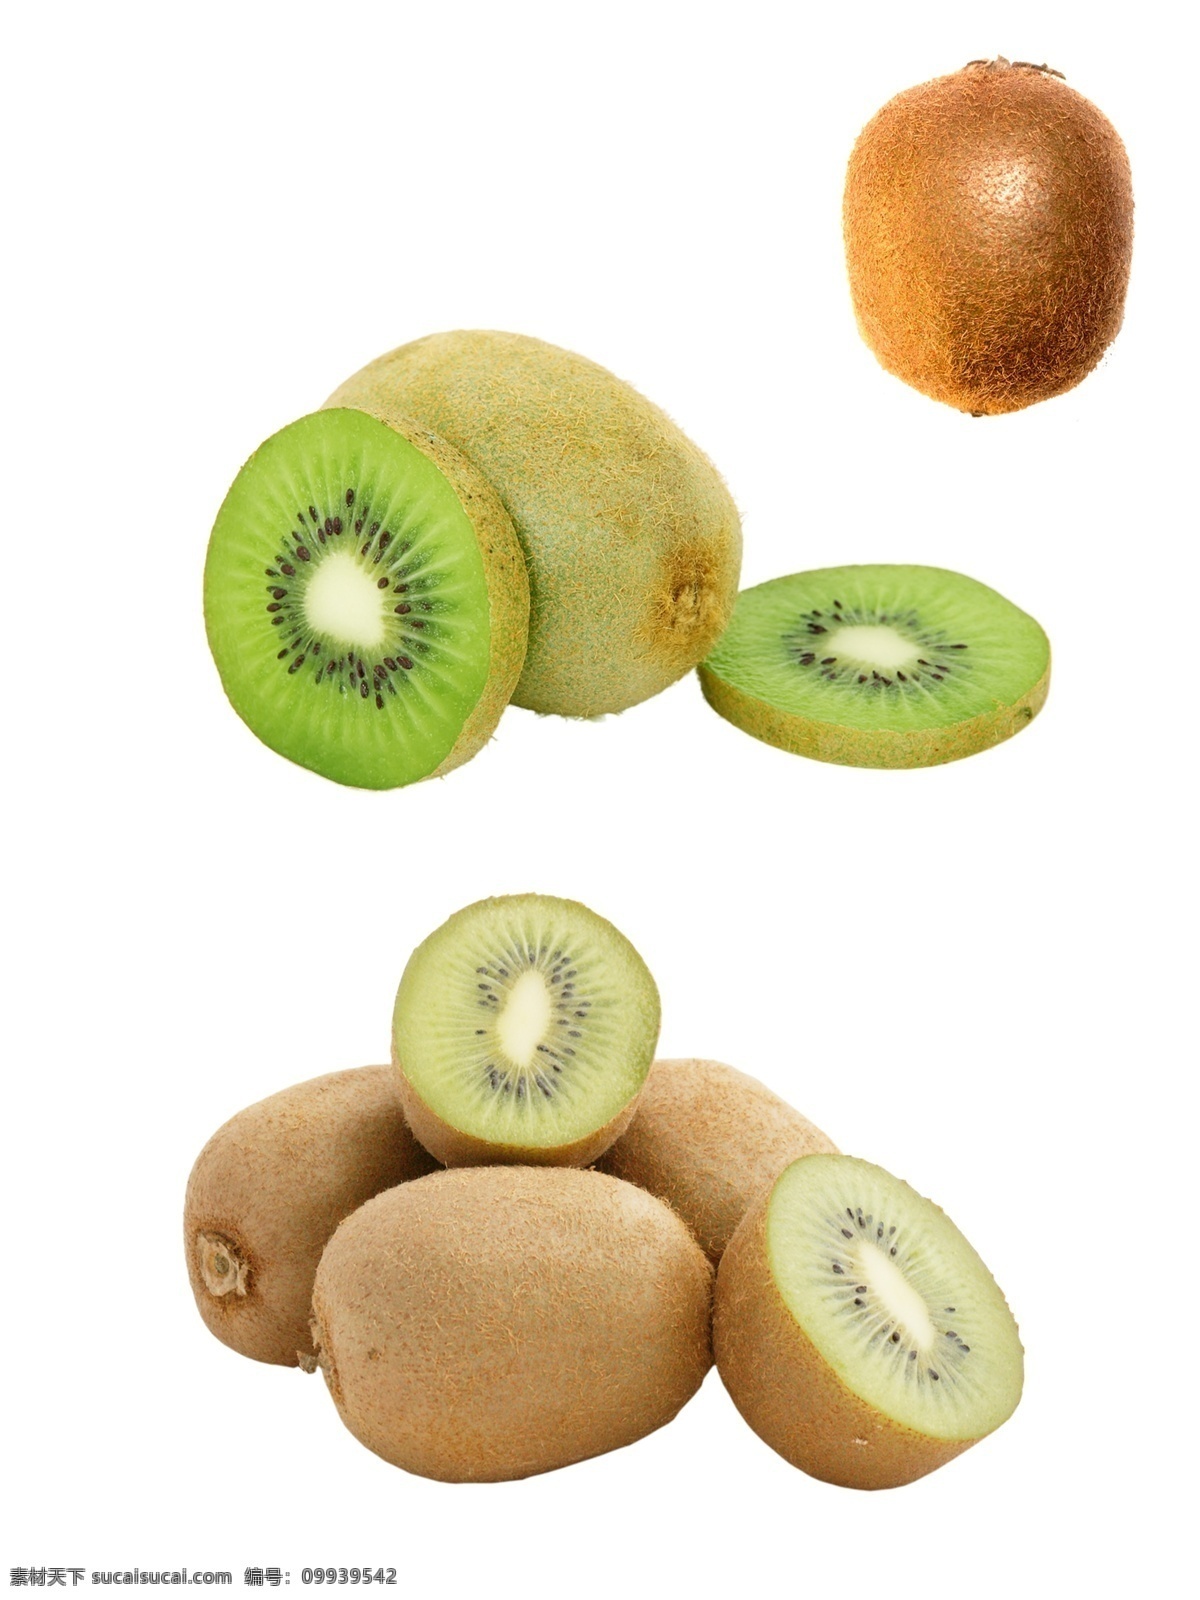 猕猴桃 奇异果 水果素材图片 水果素材 切开的猕猴桃 切片的猕猴桃